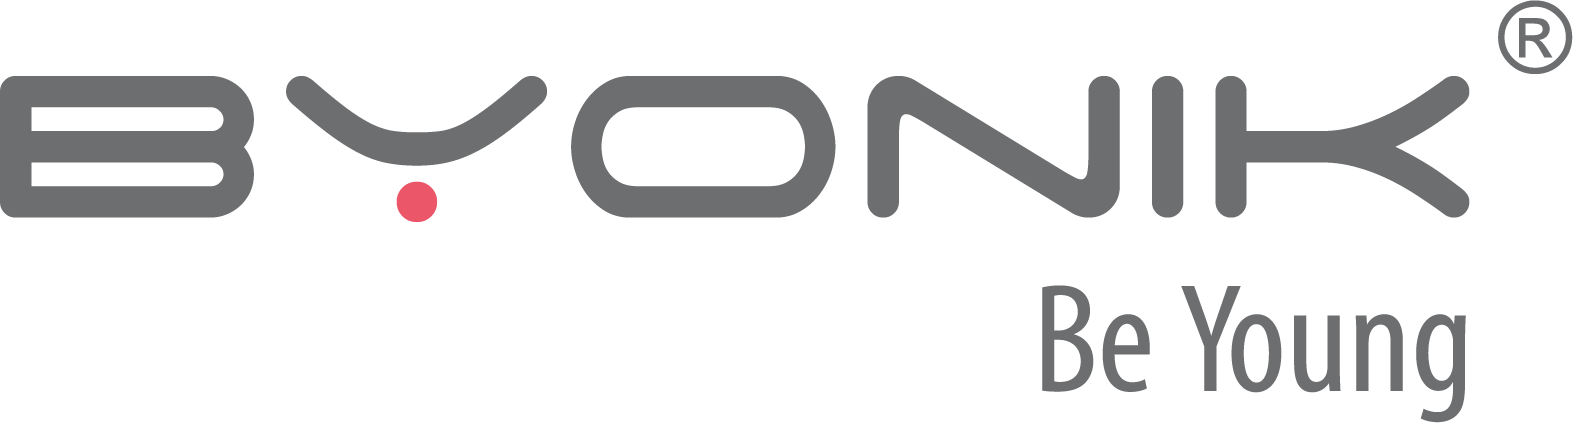 Byonik logo